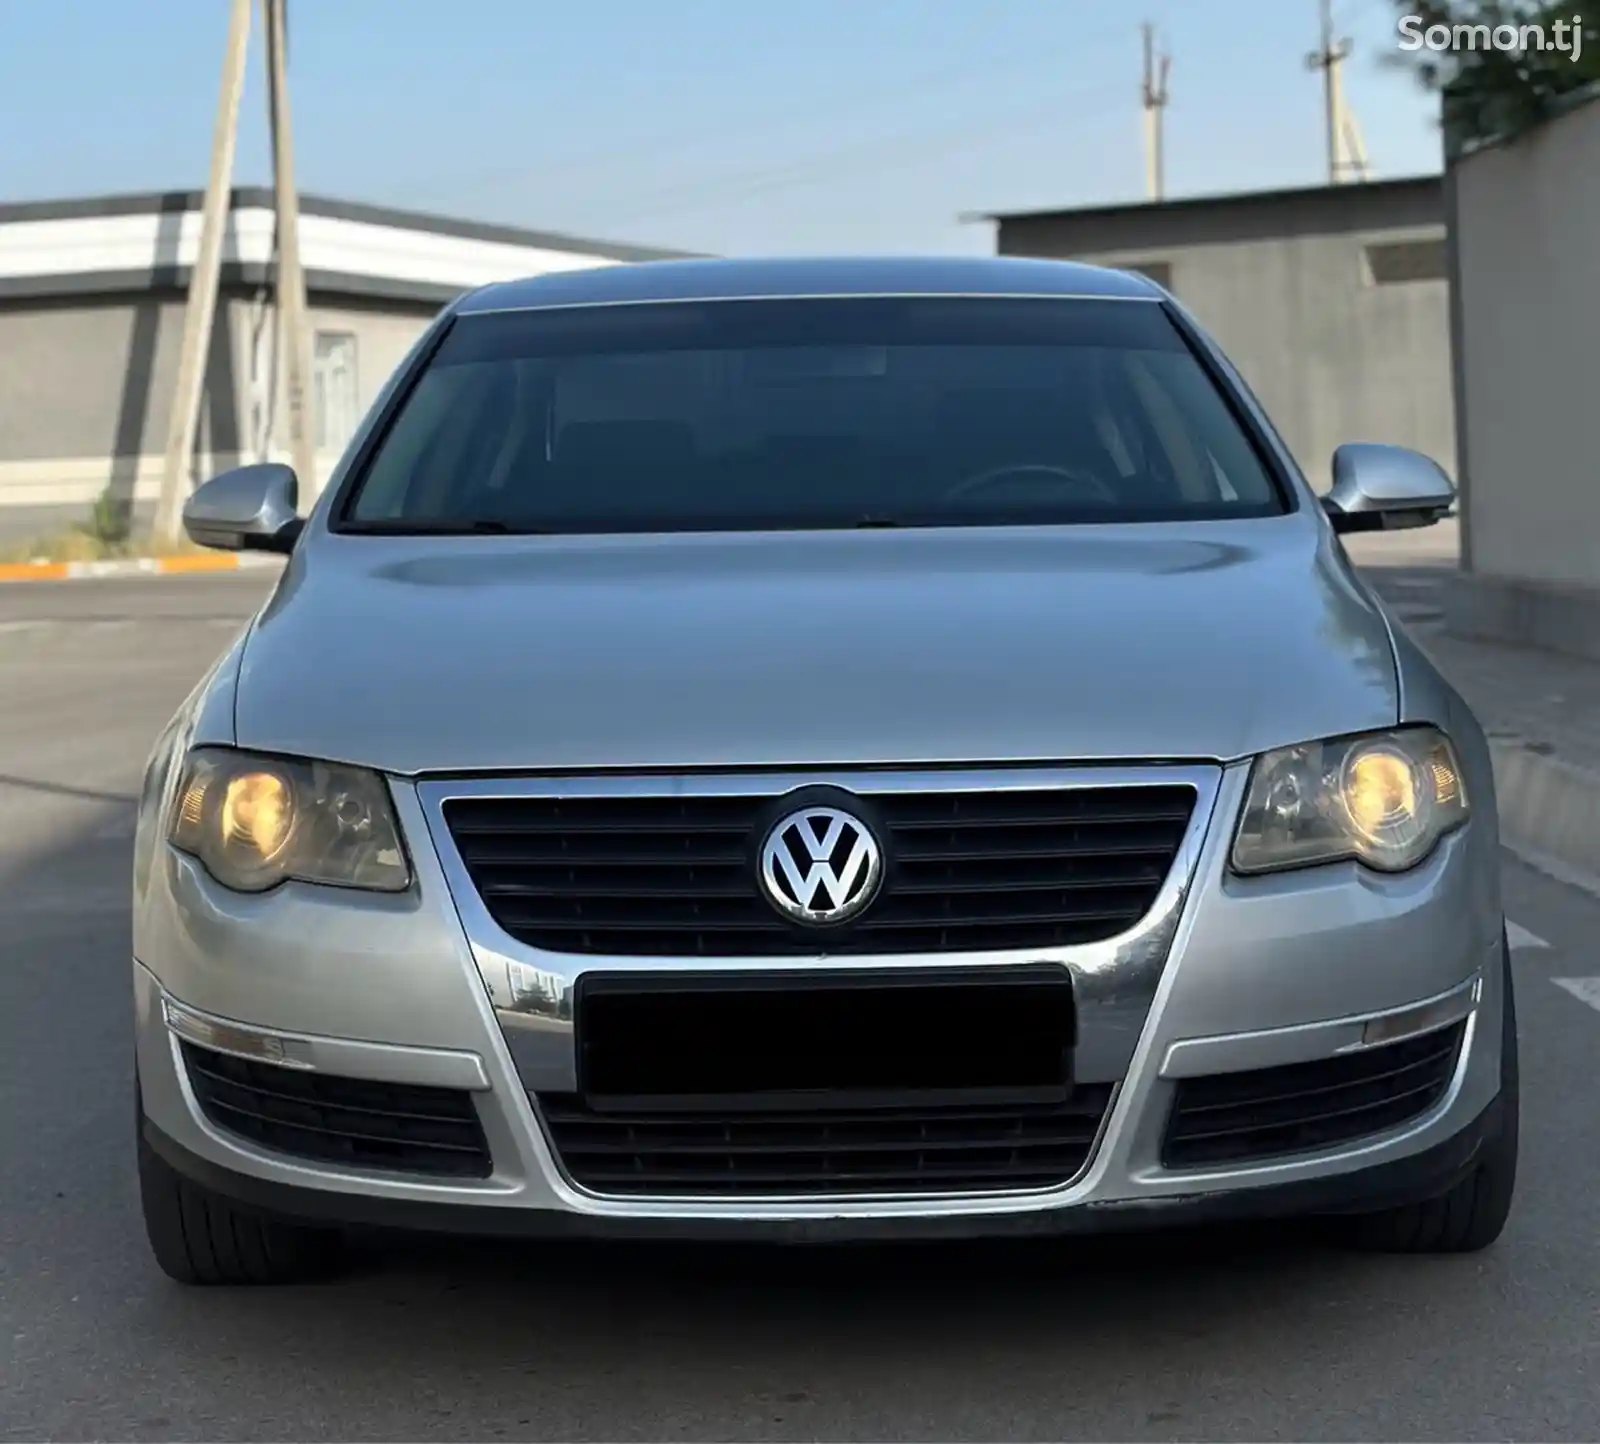 Volkswagen Passat, 2006-2